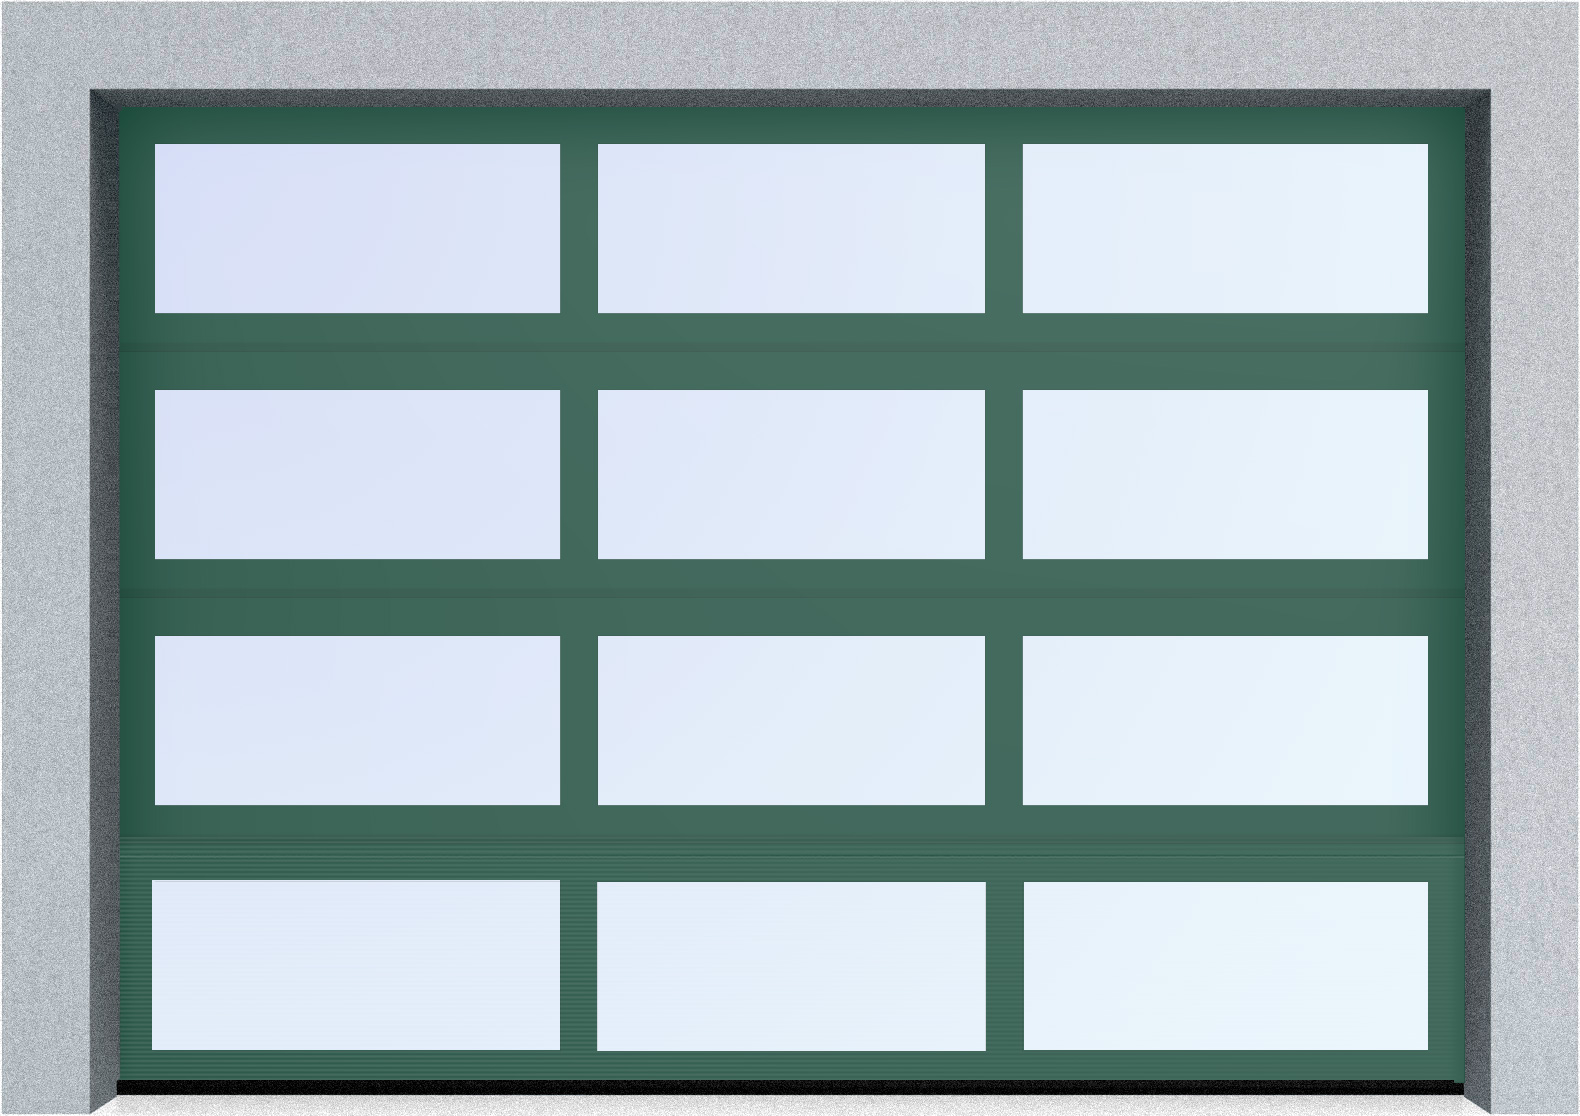  Автоматические секционные панорамные ворота серии AluTrend (АЛП) 3875х4500 стандартные цвета, фото 4 